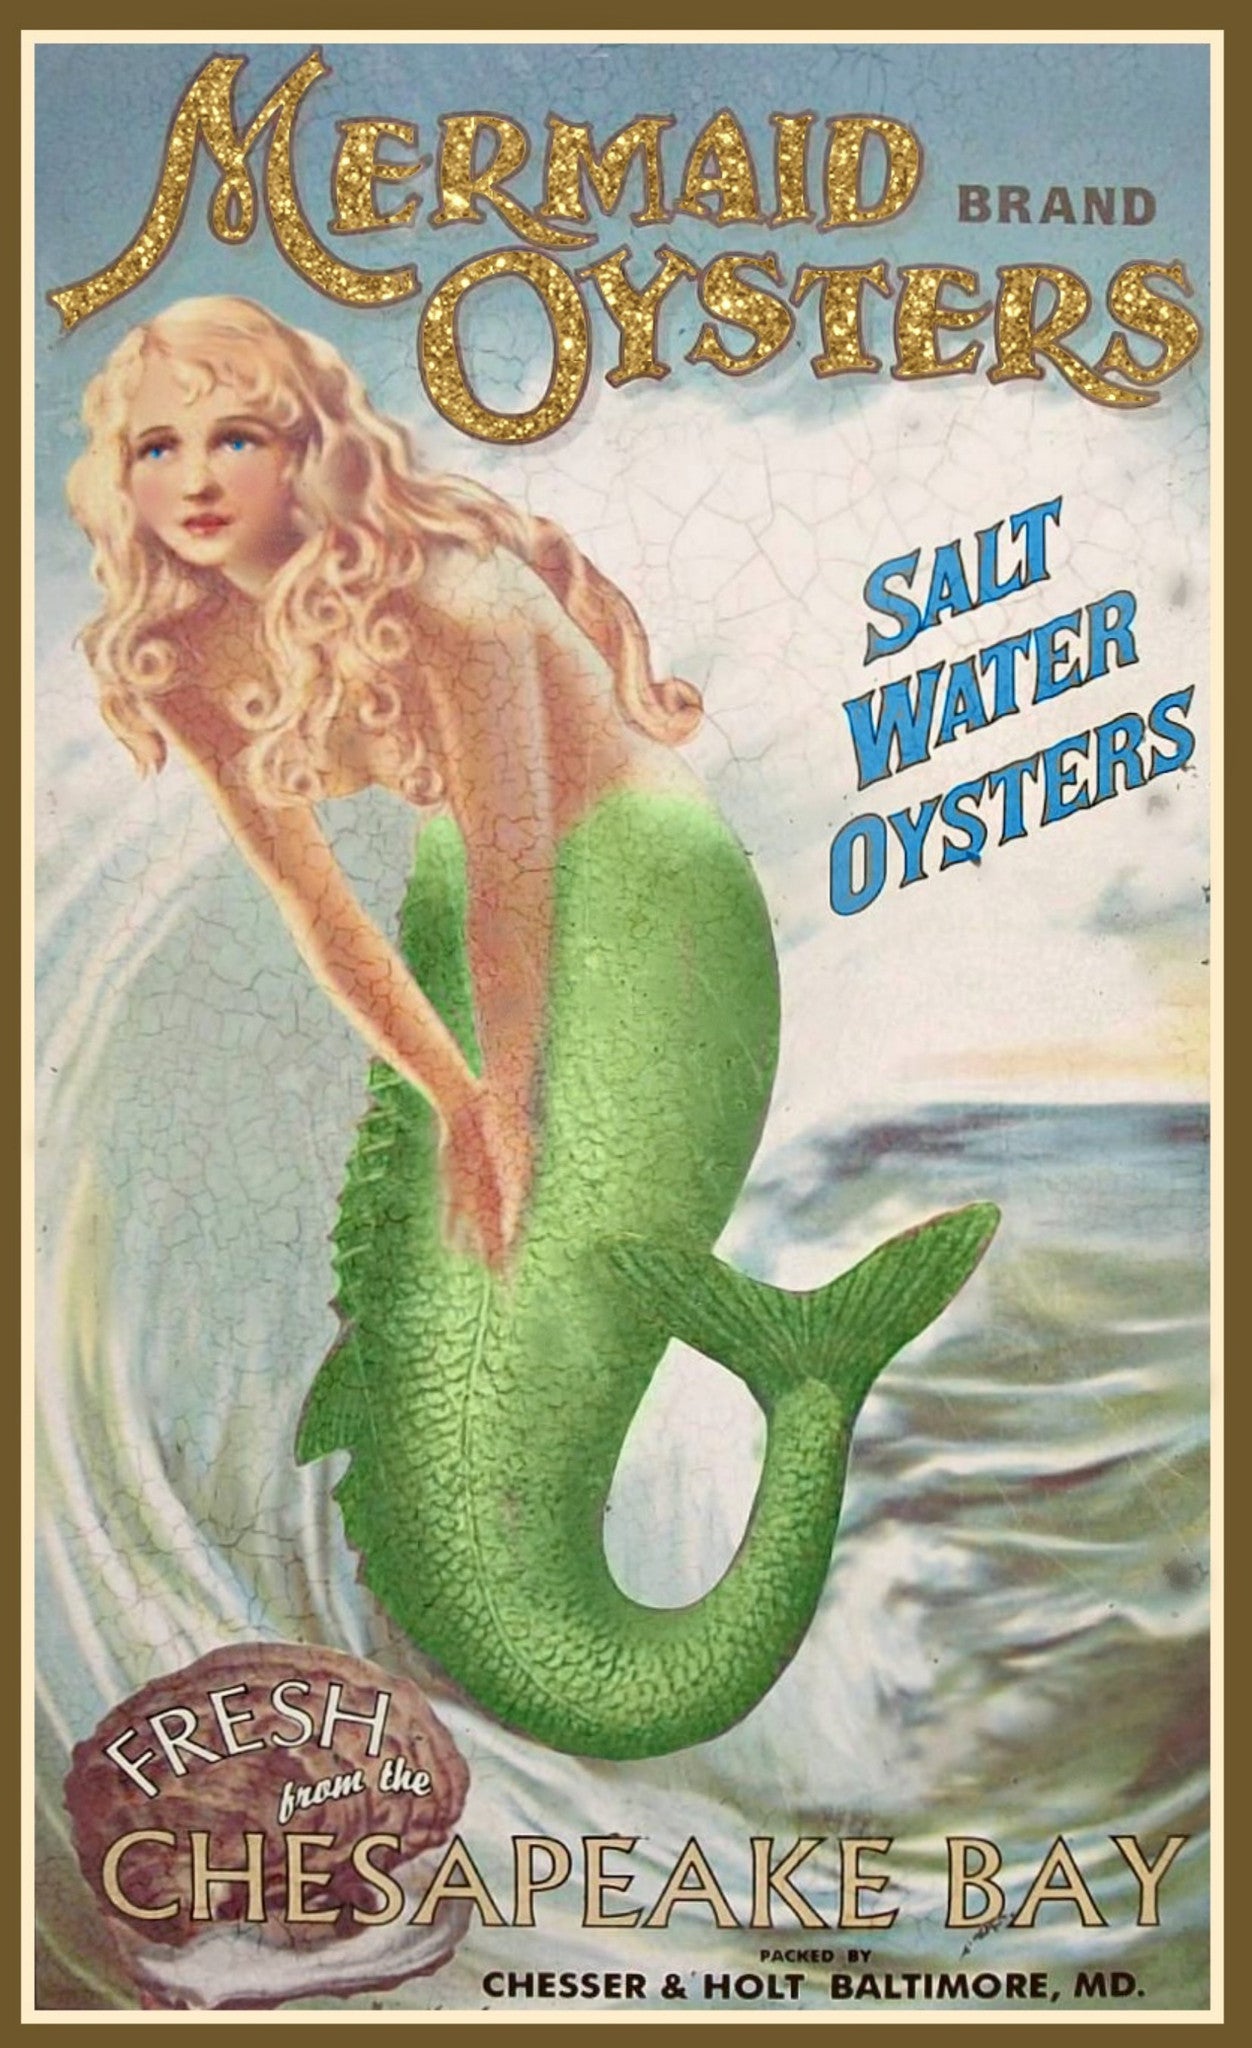 Vintage Mermaid Sign